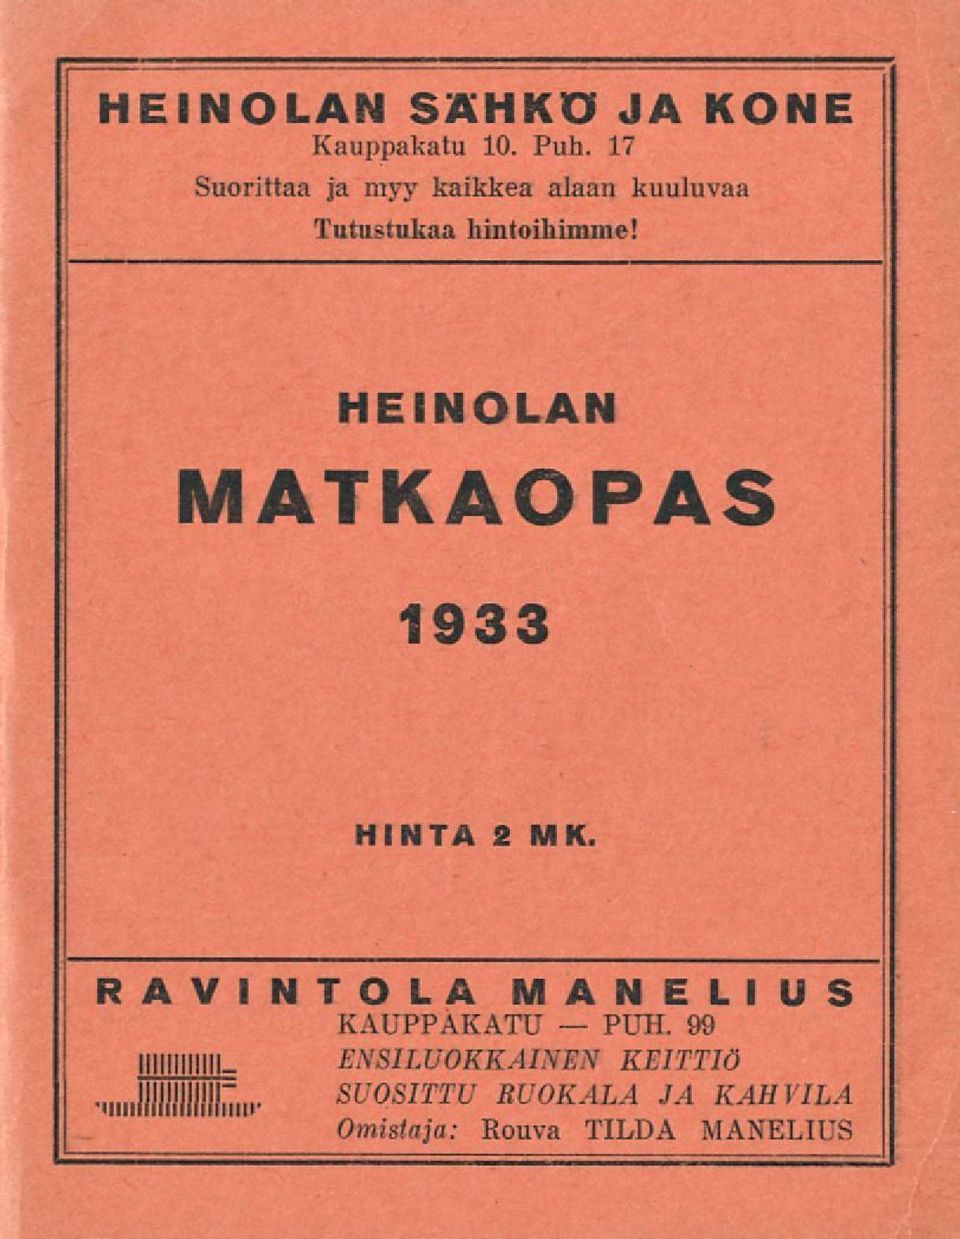 HEINOLAN MATKAOPAS 1933 HINTA 2 MK.